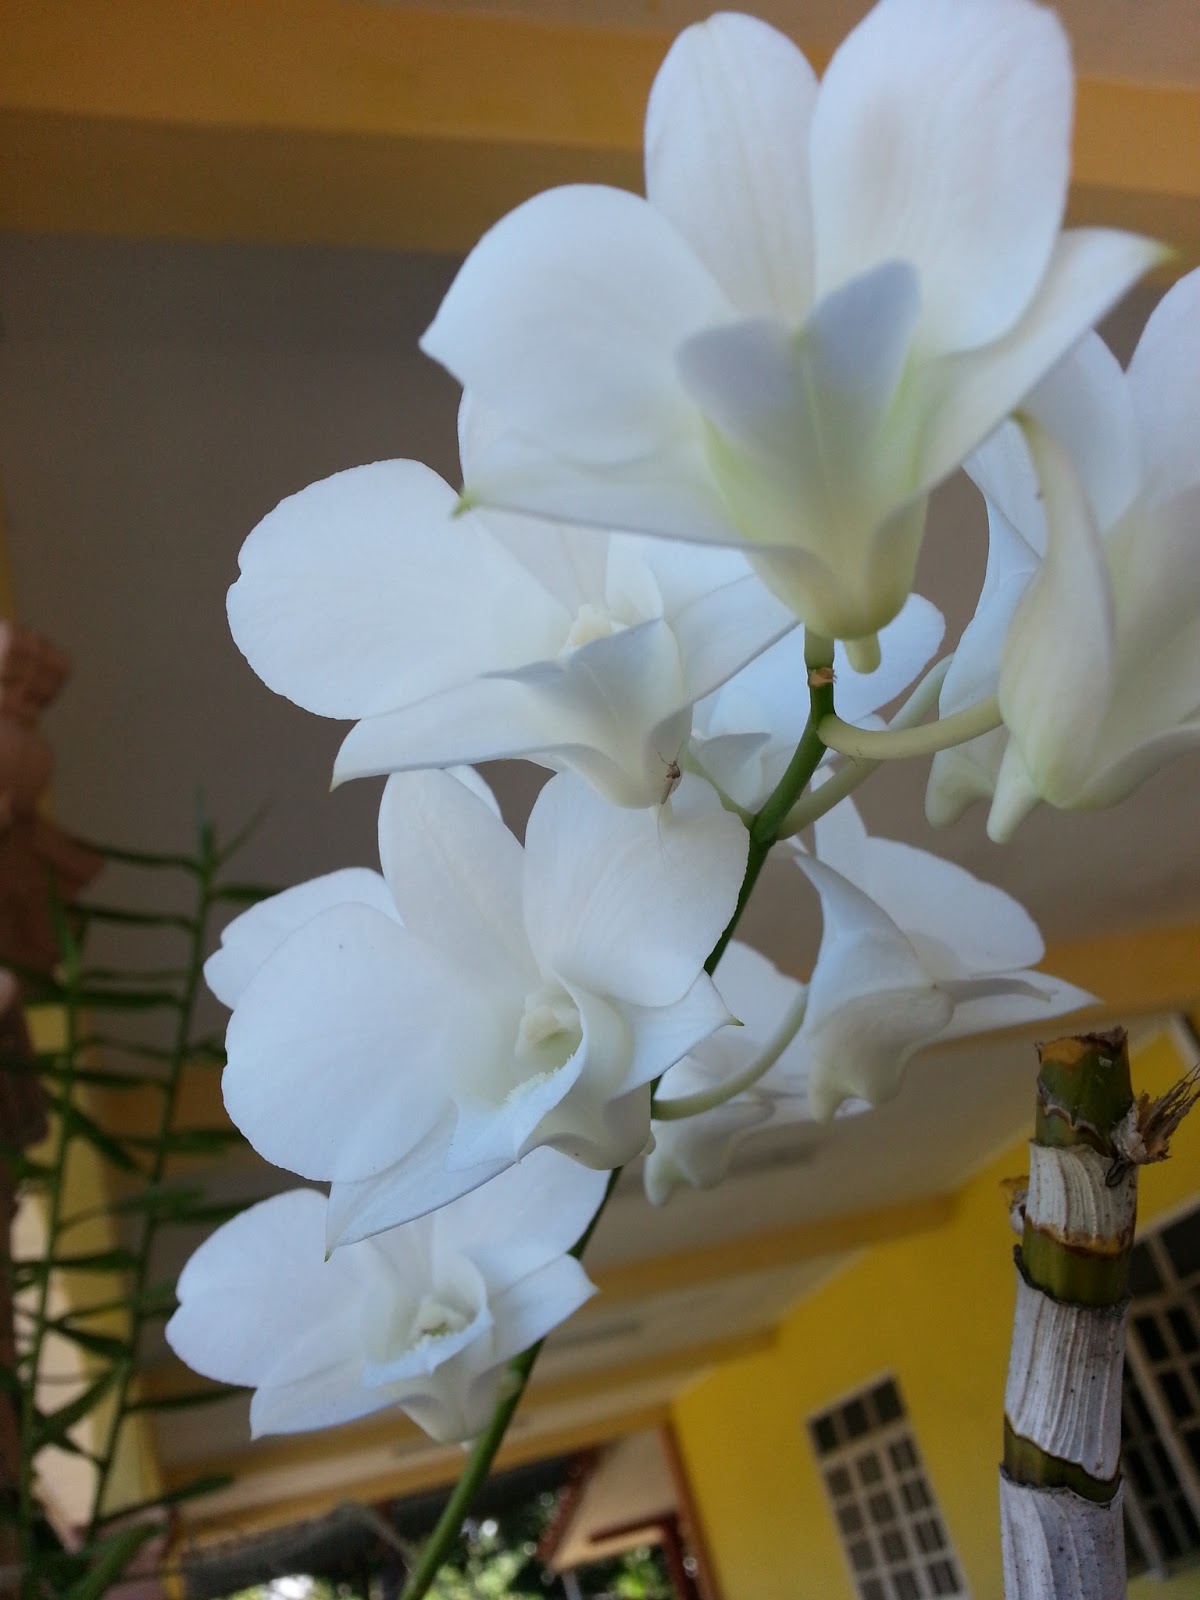 Gambar Simple Wonderful Orkid Laa Bunga Putih Panjang Umur Gambar di Rebanas - Rebanas